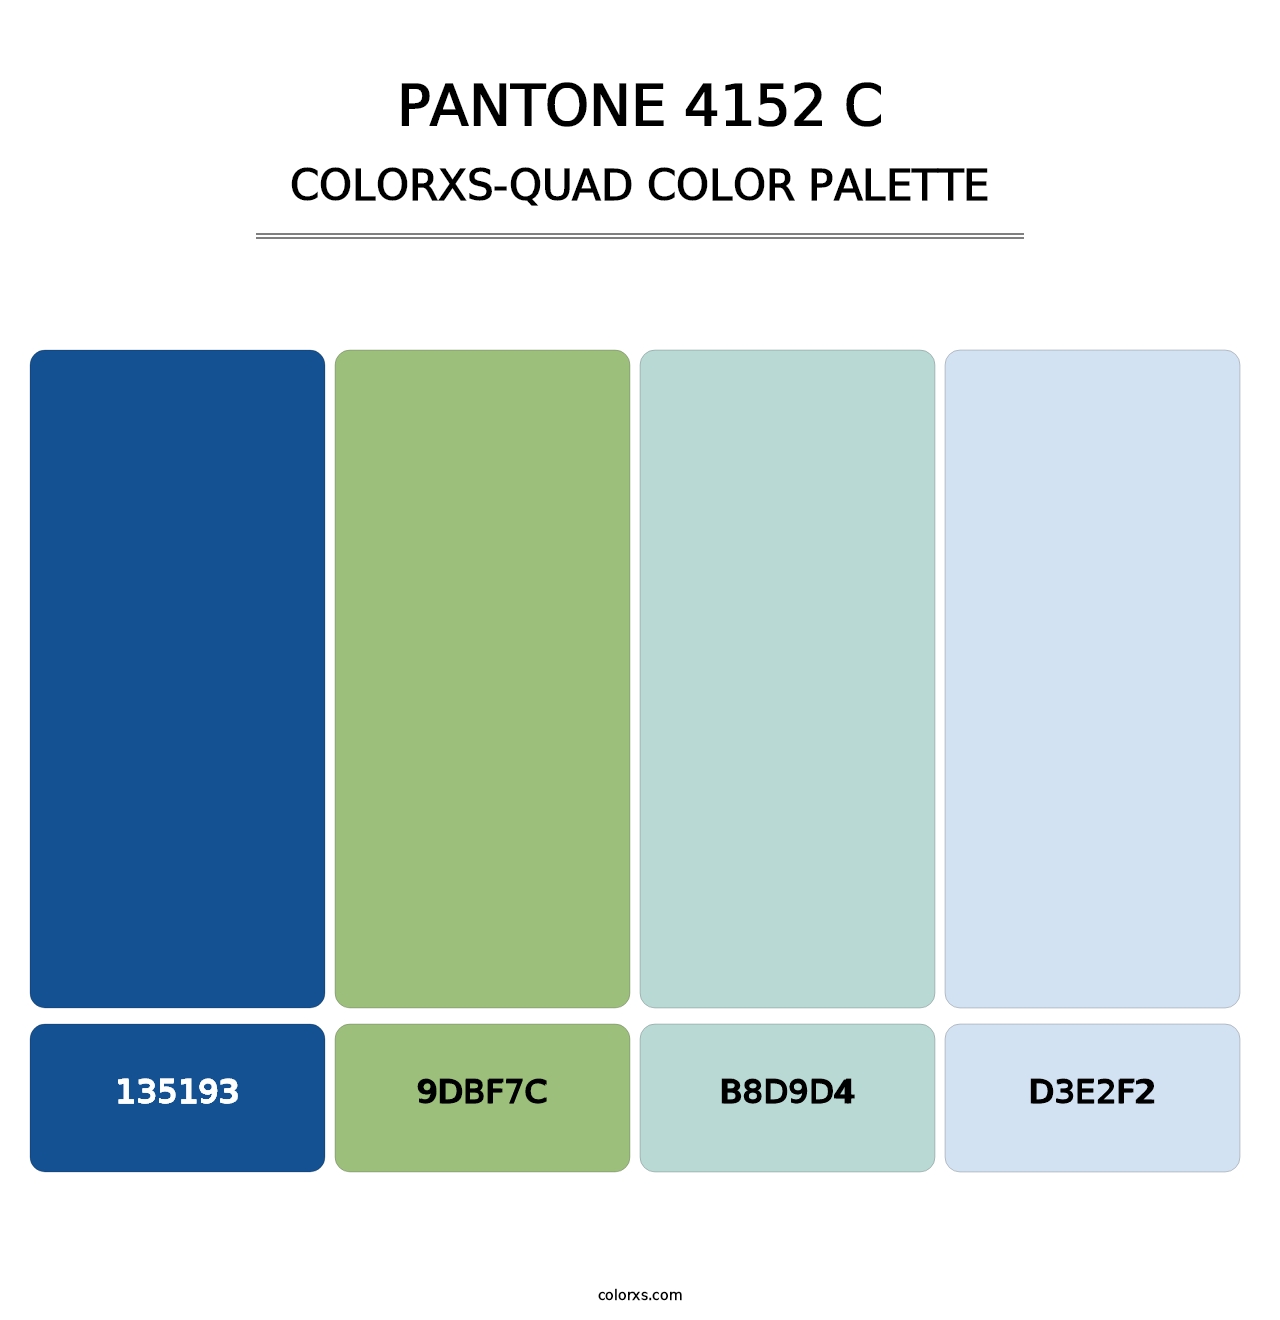 PANTONE 4152 C - Colorxs Quad Palette